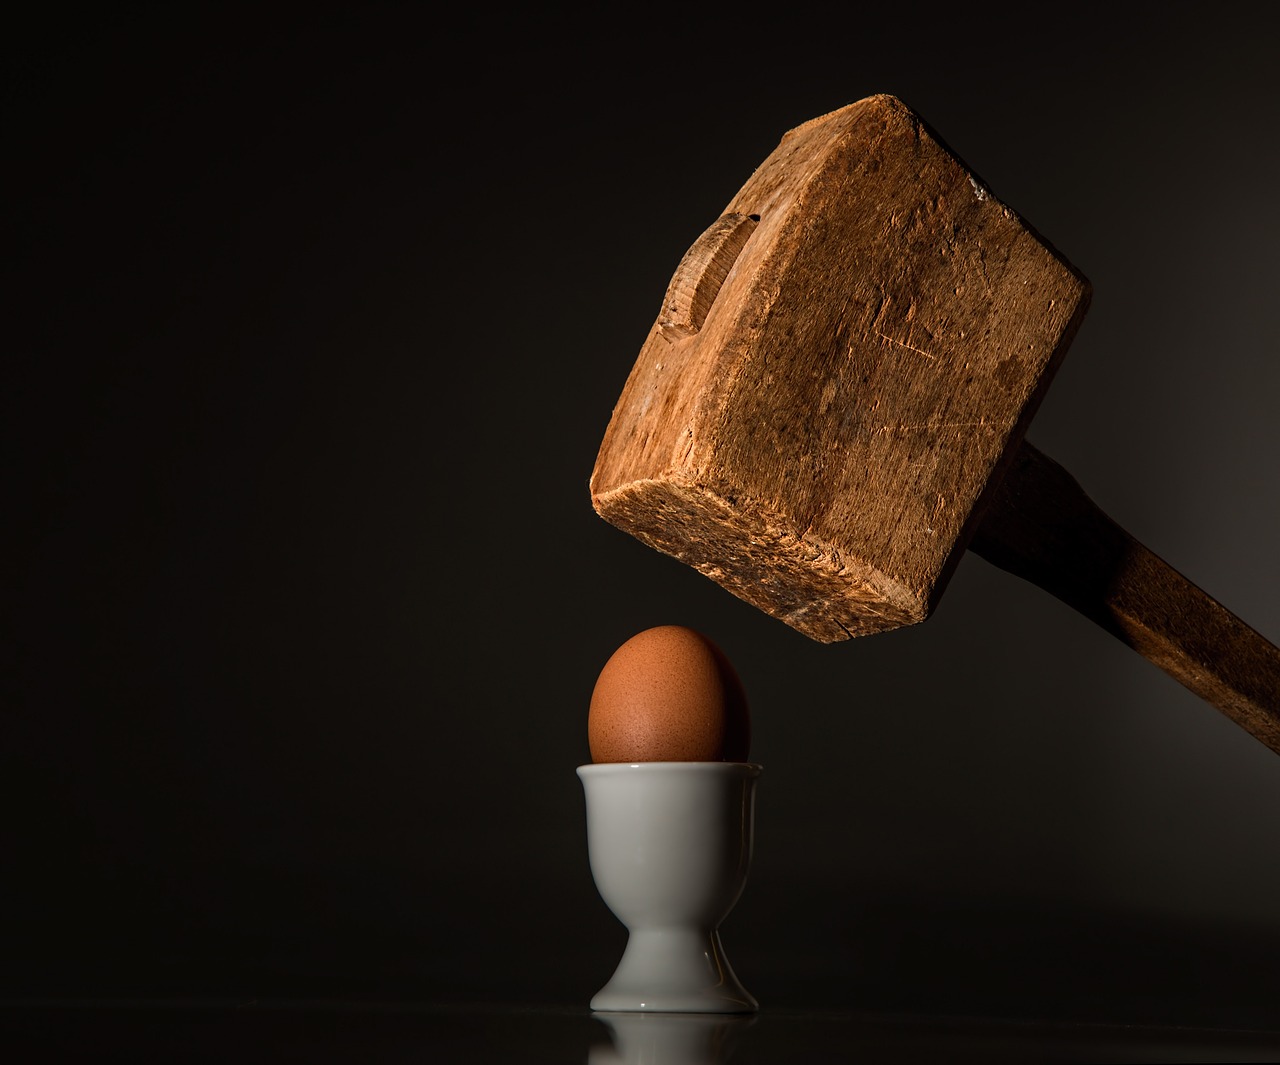 Ein Hammer, der gerade dabei ist ein Ei zu zerschlagen. Konfliktmanagement Coaching.